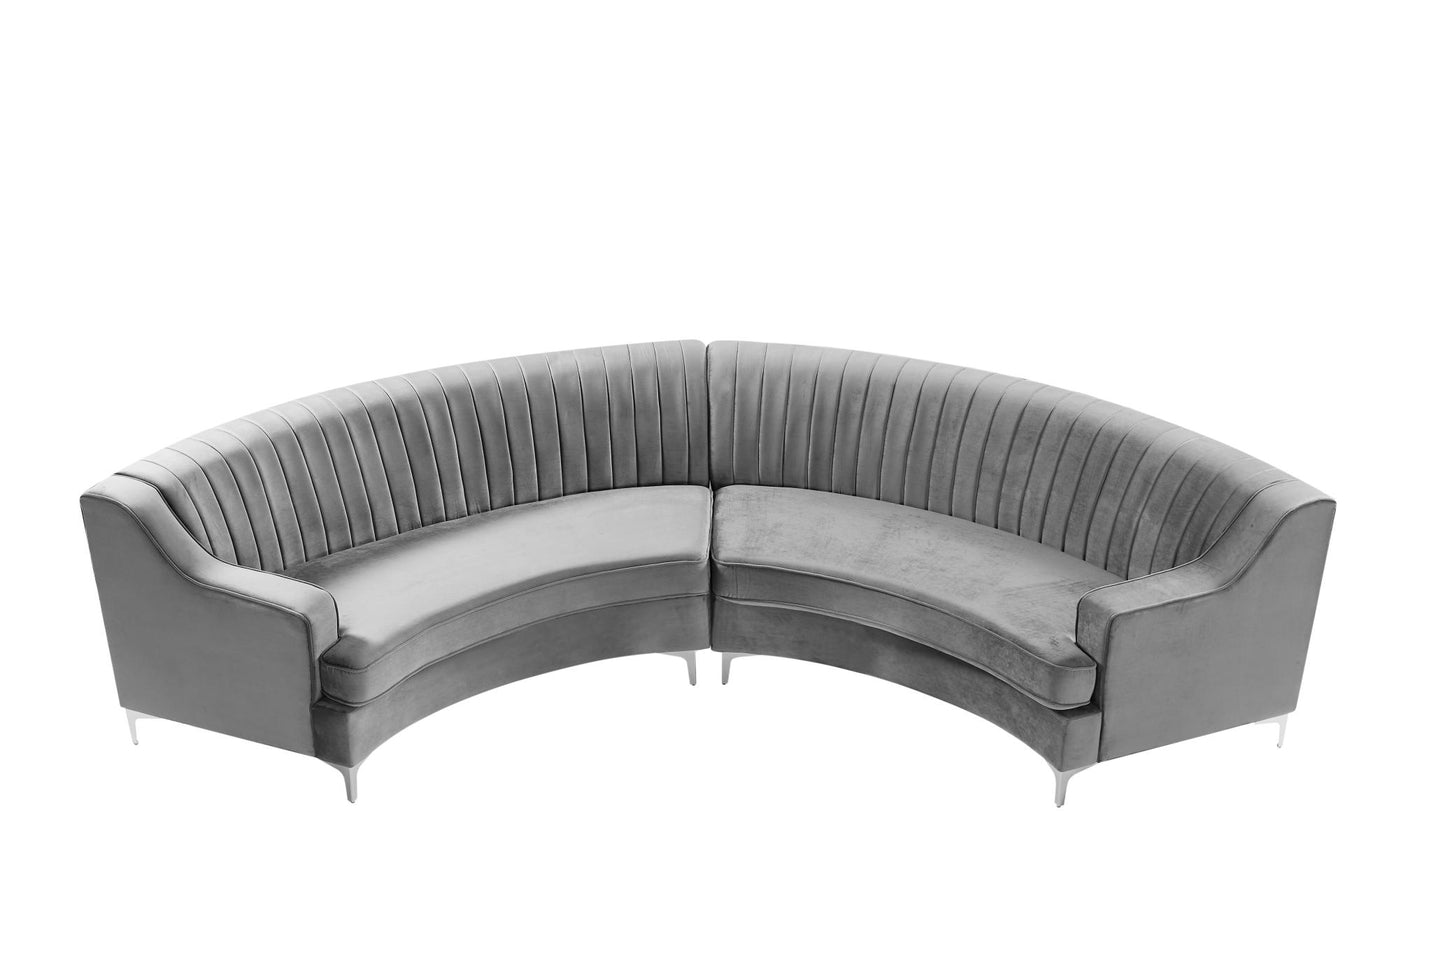 Velvet Curved Oversize Sofa for Living Room